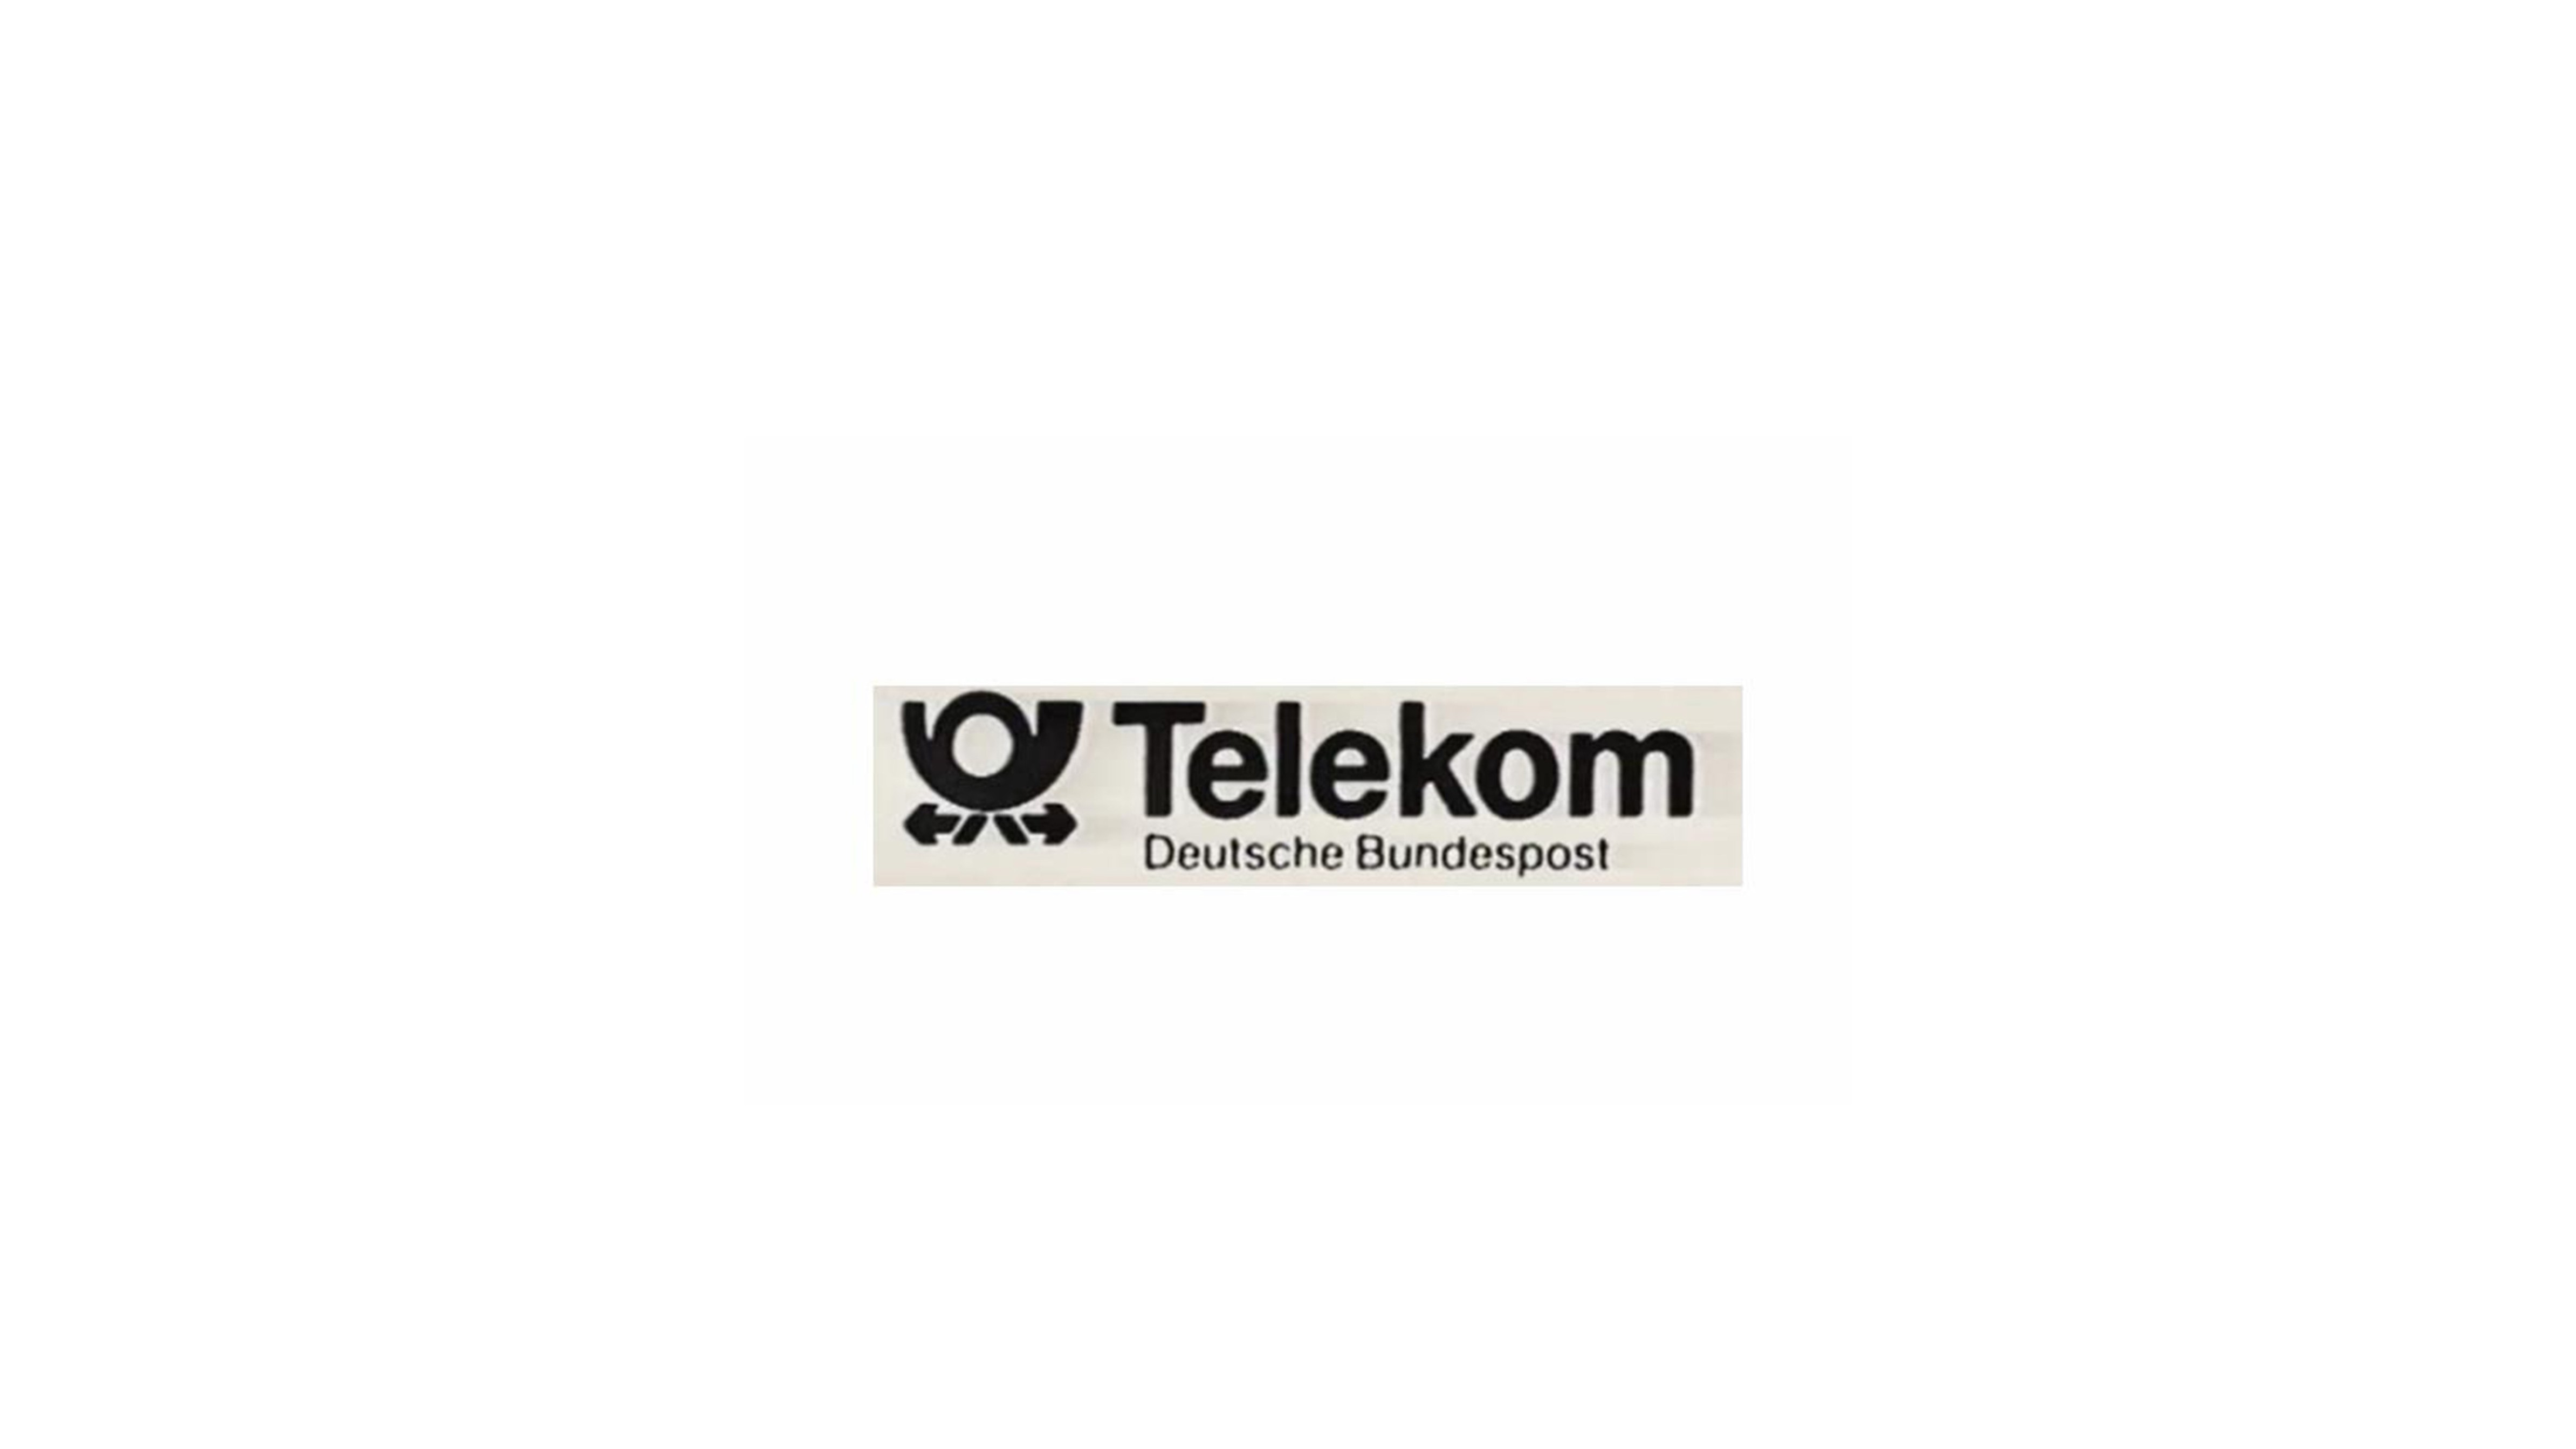 Telekom 德国电信的历史LOGO